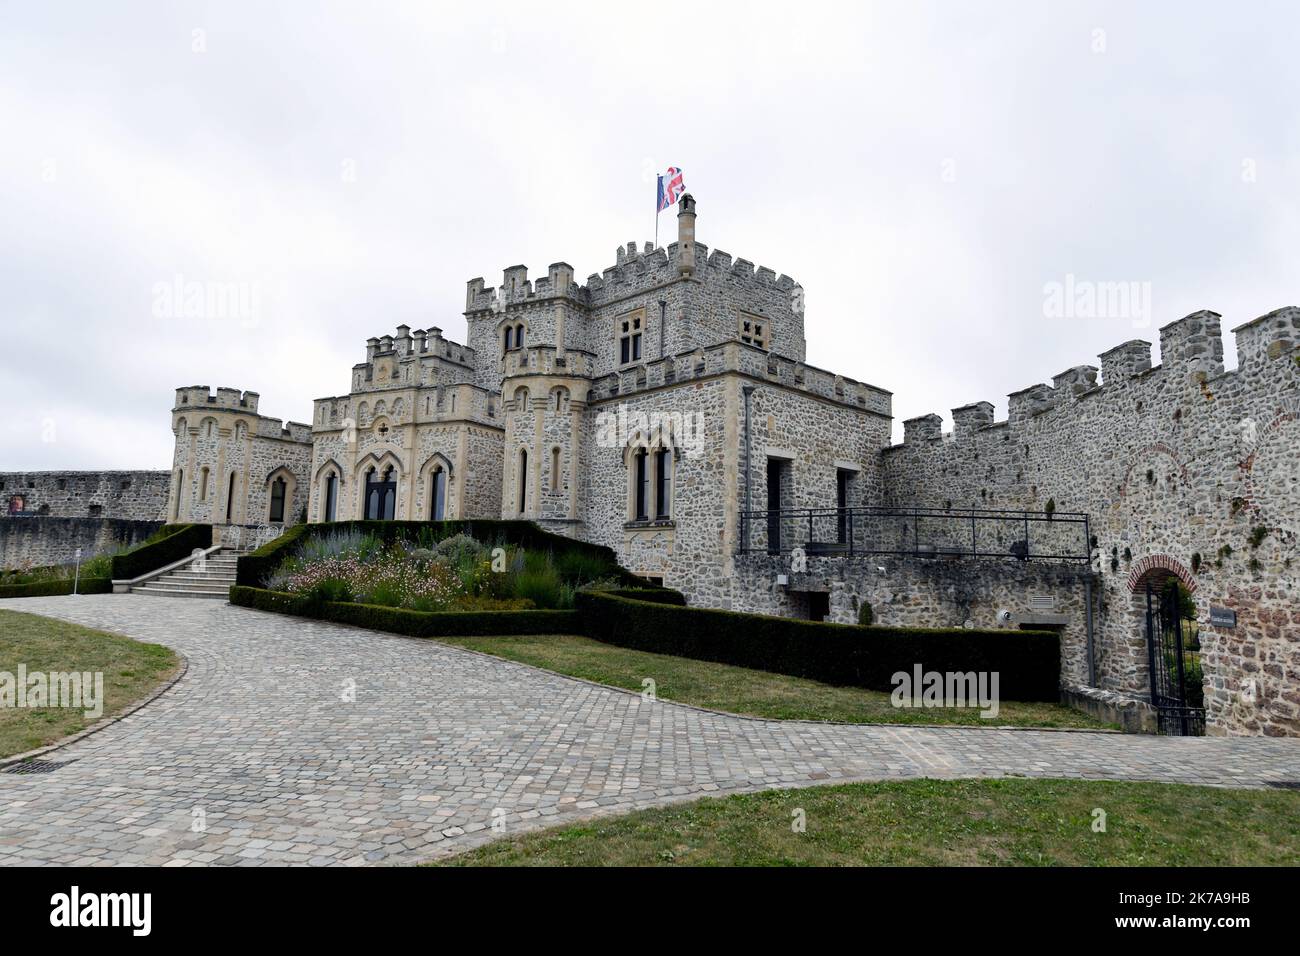 ©PHOTOPQR/VOIX DU NORD/1 ; 24/07/2020 ; Condette, le 24/07/2020, visite du Château d'Hardelot, centre culturel de l'Entente cordiale à Condette PHOTO ZACK AJILI LA VOIX DU NORD - Château de Hardelot, connu localement sous le nom de Château d'Hardelot, se trouve dans un champ à côté du village de Condette, dans le pas-de-Calais en France. Le château a été pris et repris plusieurs fois par les Français, les Anglais et les Bourguignons. Au 17th siècle, le Cardinal Richelieu fit démonter le château de Hardelot et le château devint une ferme. Banque D'Images